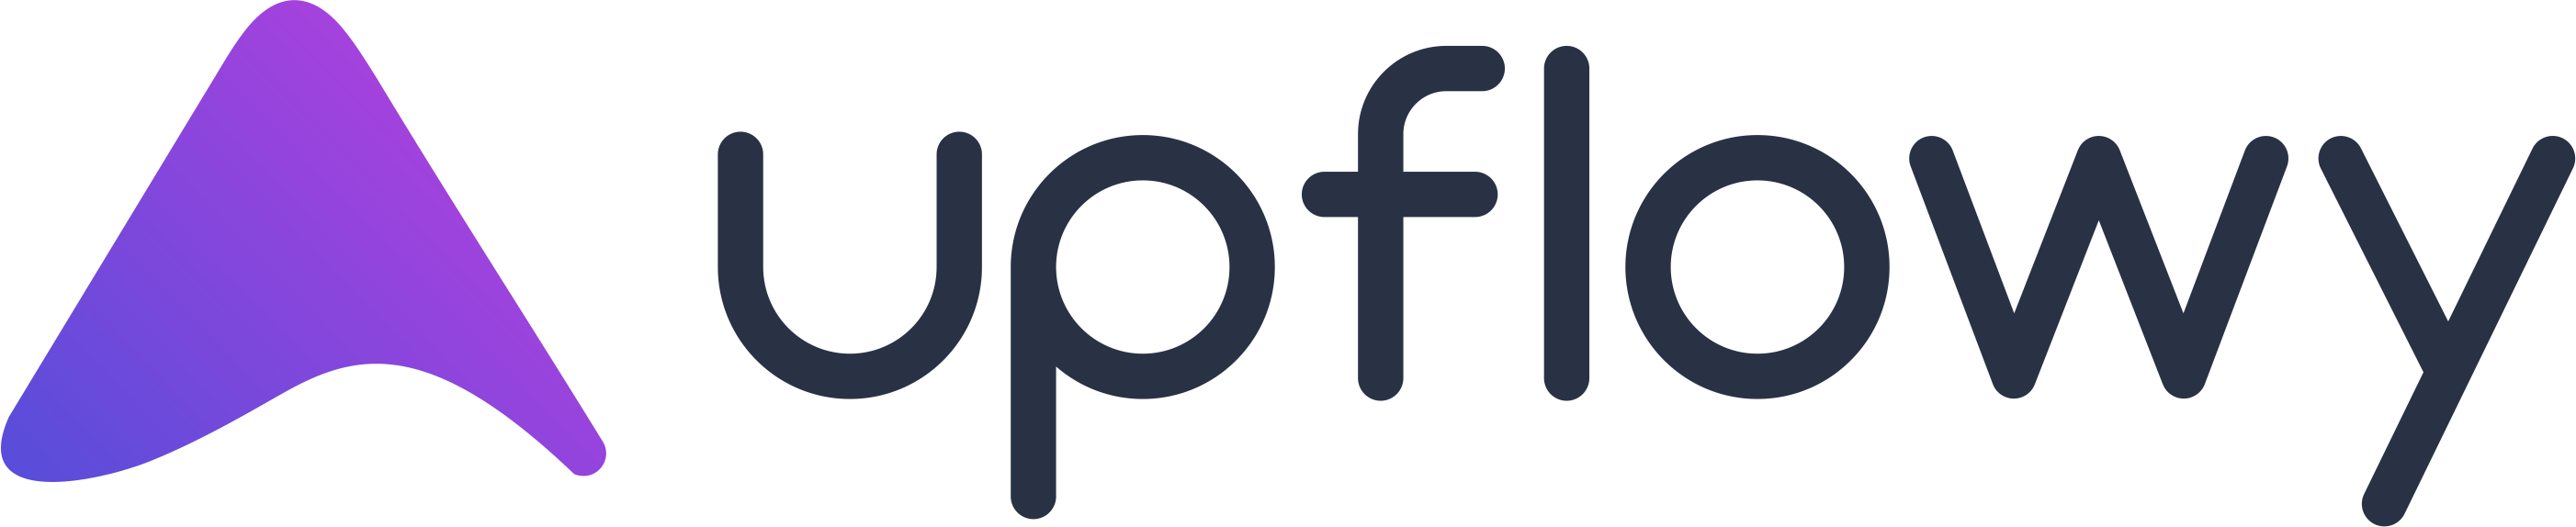 Upflowy-logo